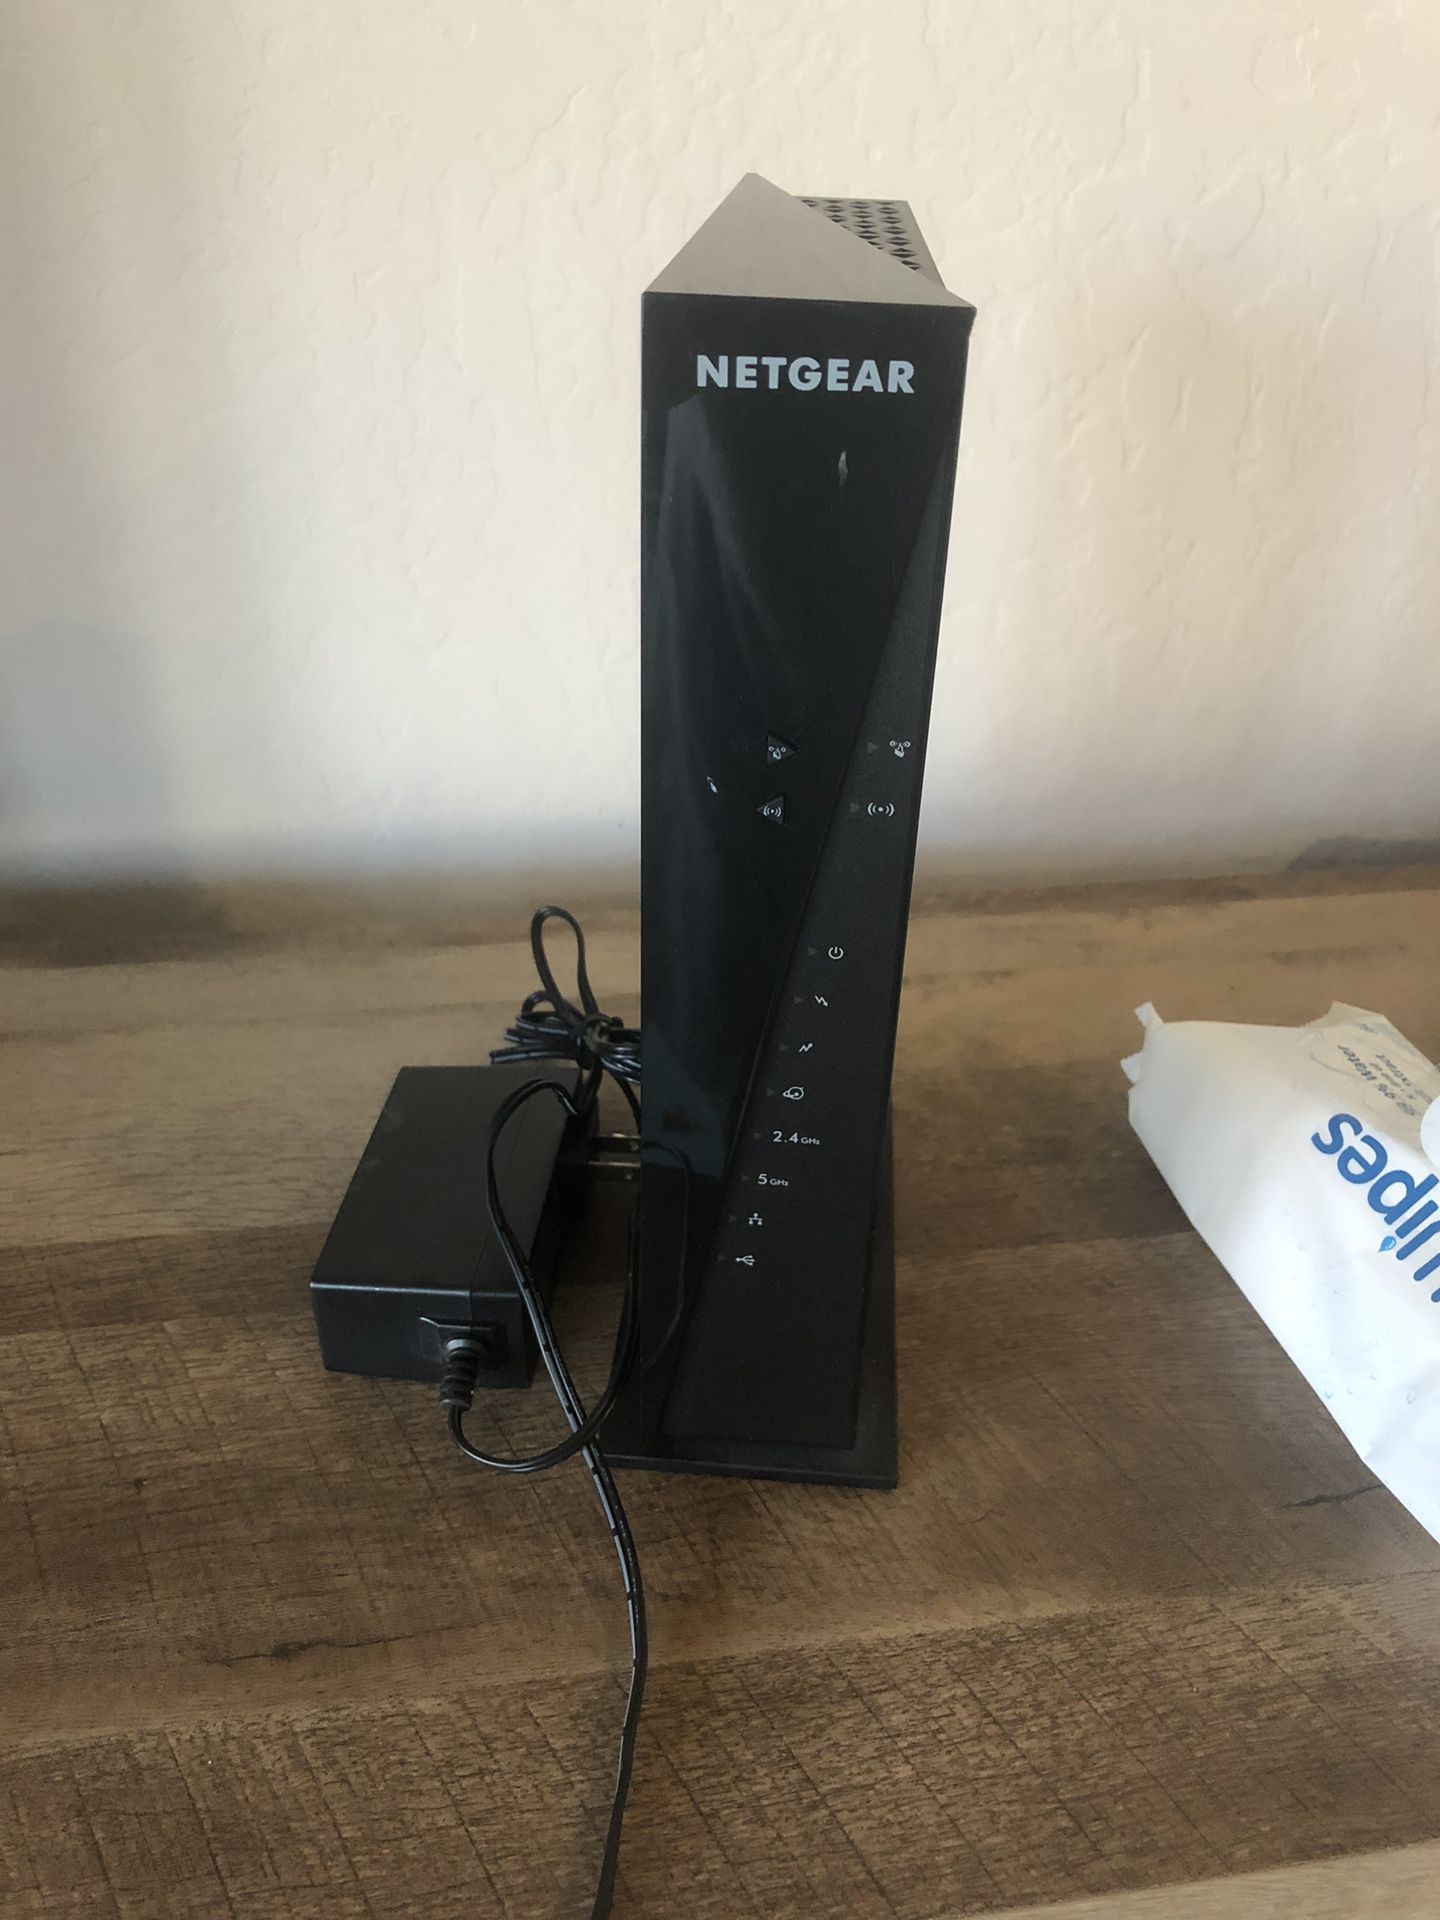 Netgear C6300 router modem